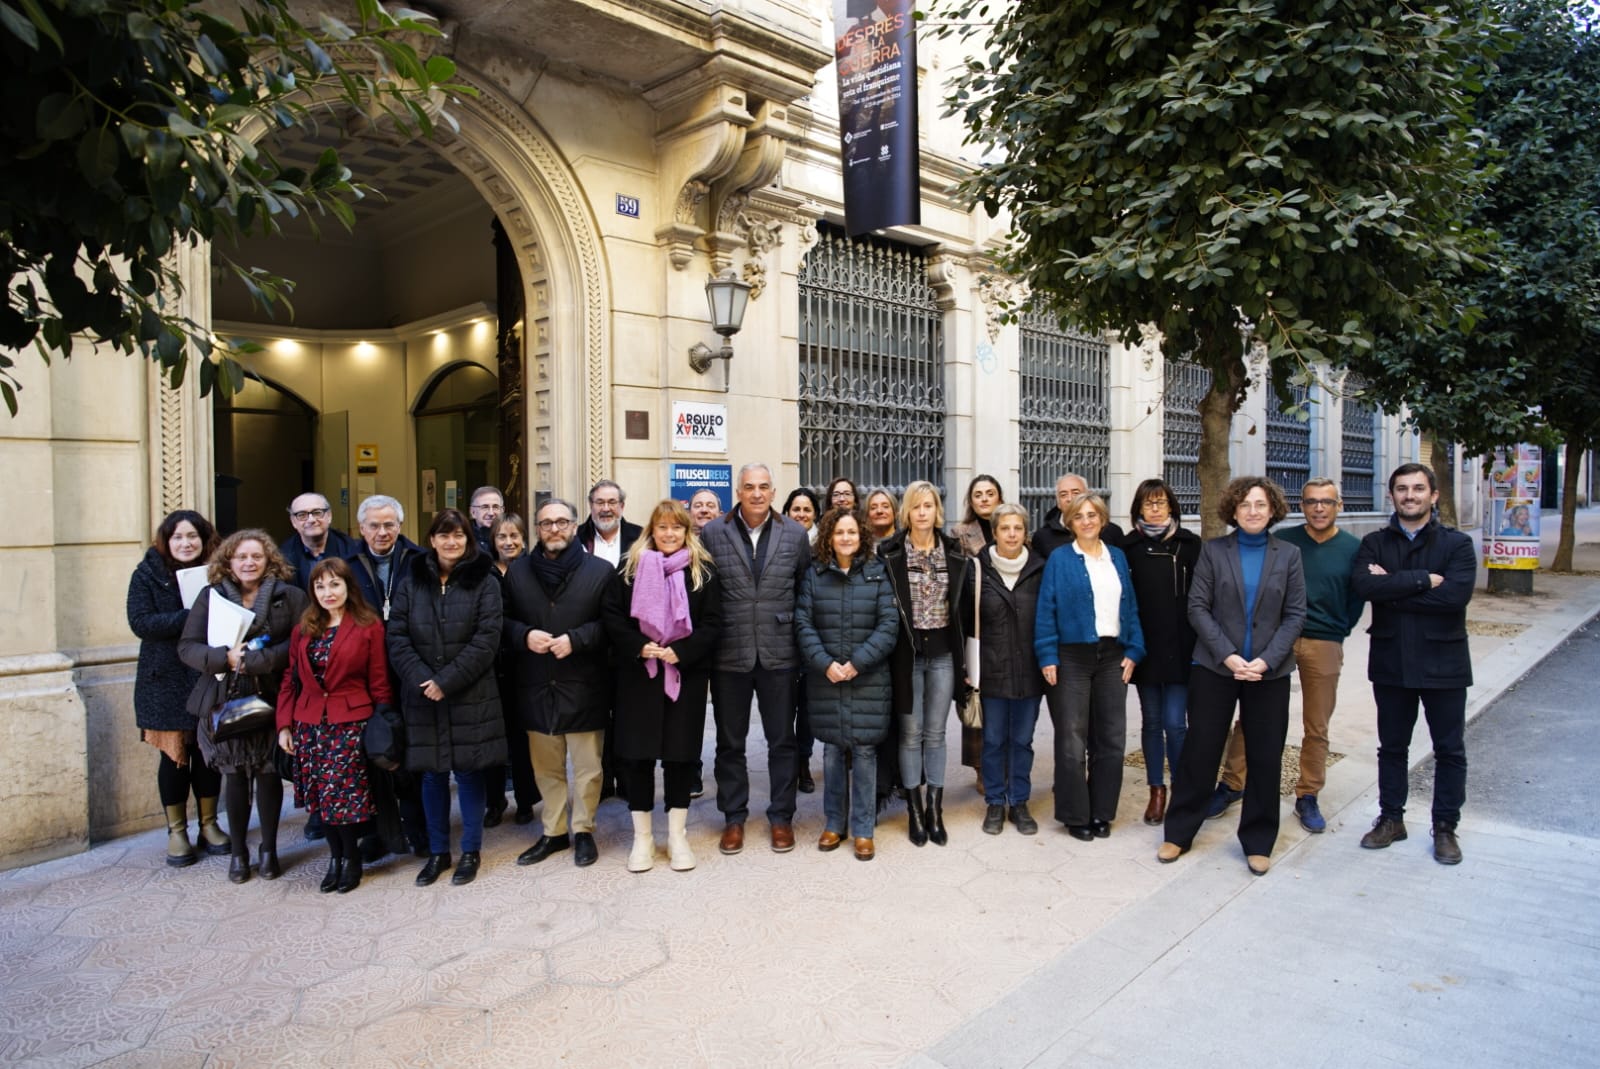 Xarxa Territorial de Museus del Camps de Tarragona i Terres de l'Ebre